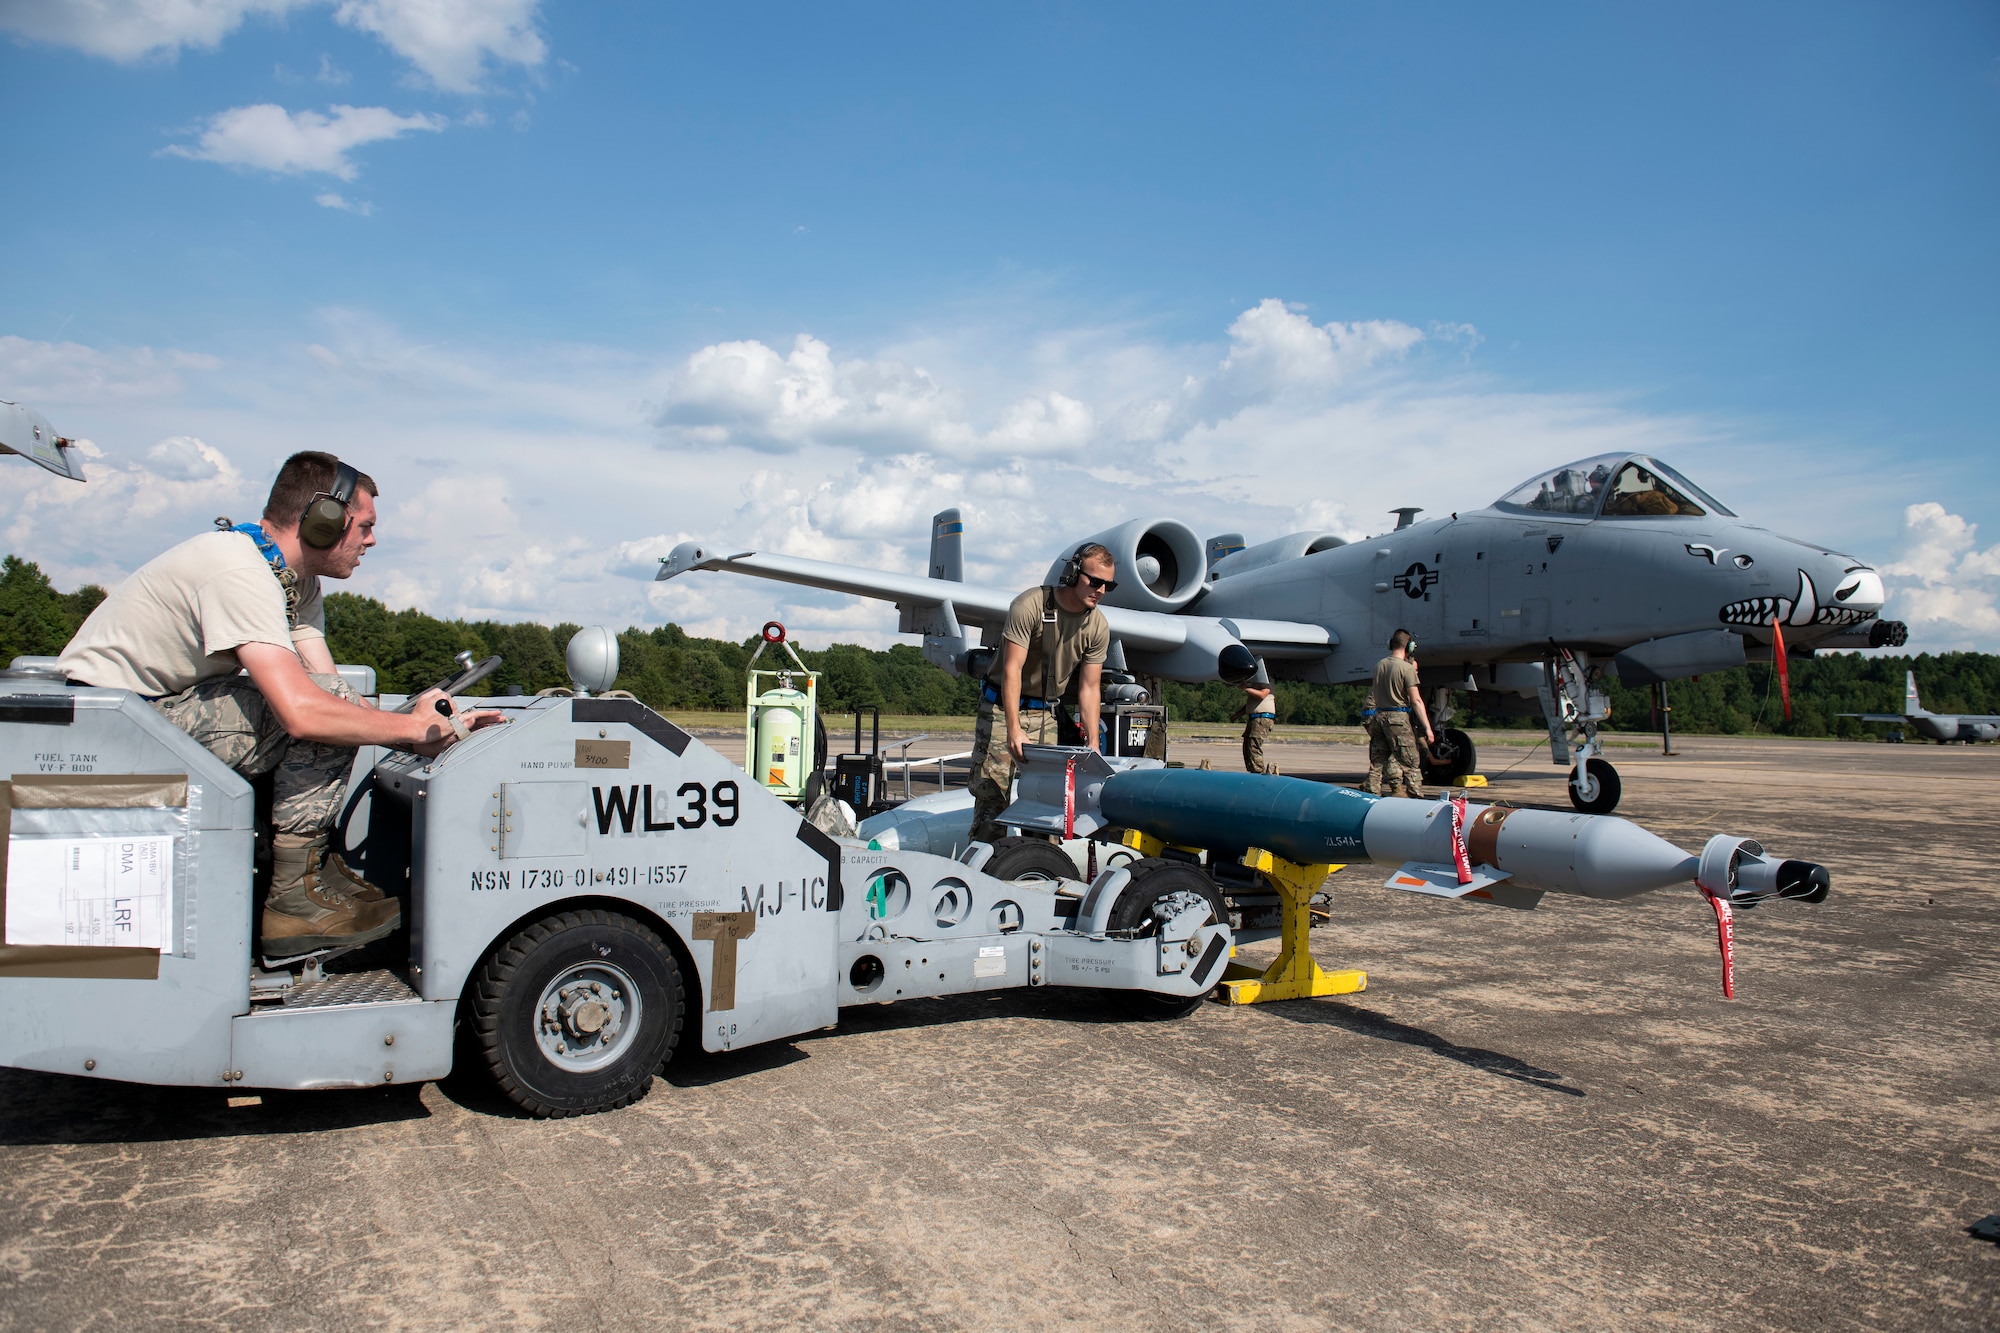 Airmen prepare to load an inert munition onto an aircraft